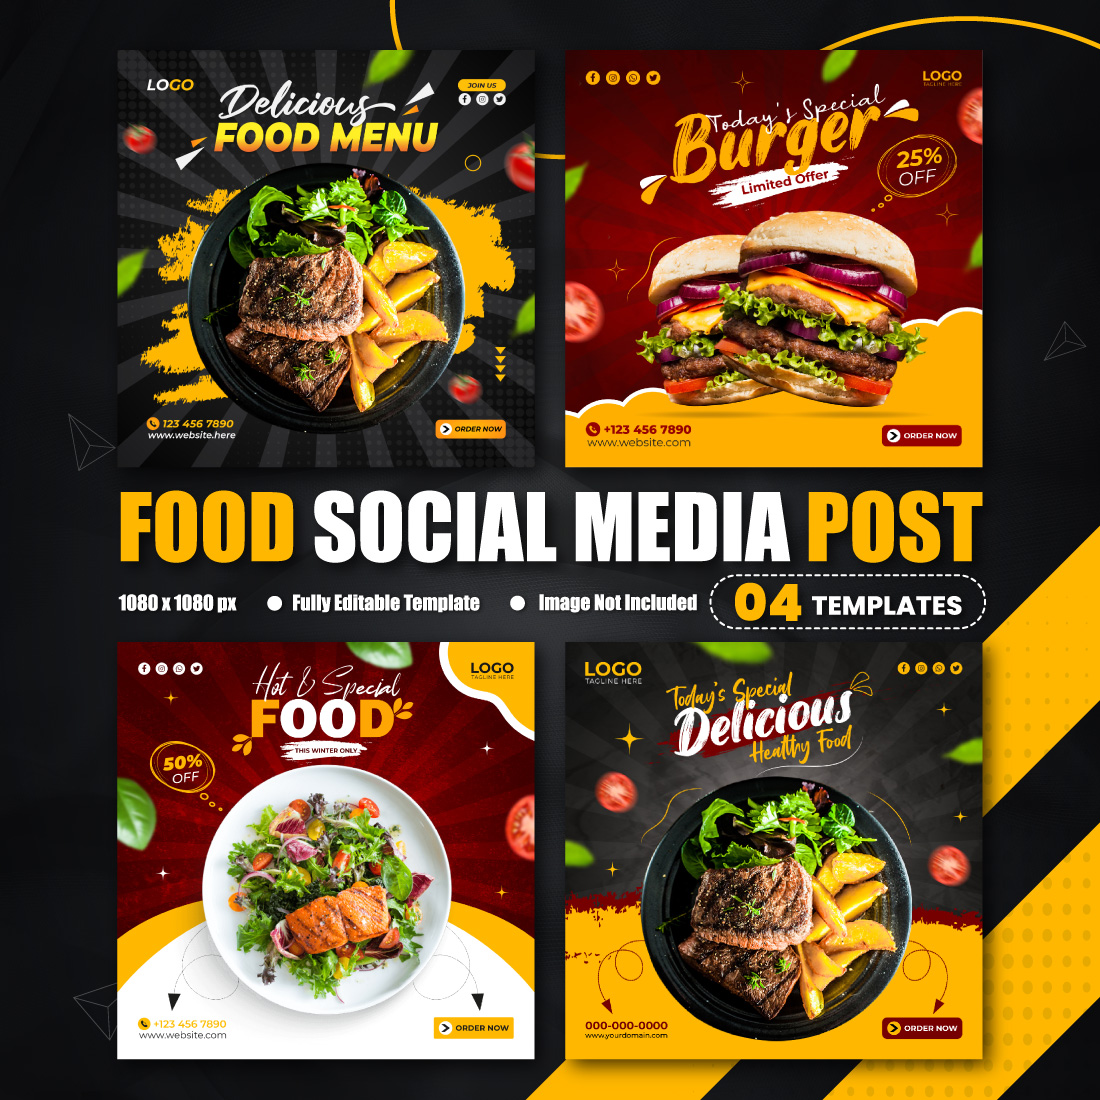 Food Social Media Promotional Post & Instagram Banner Design Template for Restaurant Business 4 Set cover image.